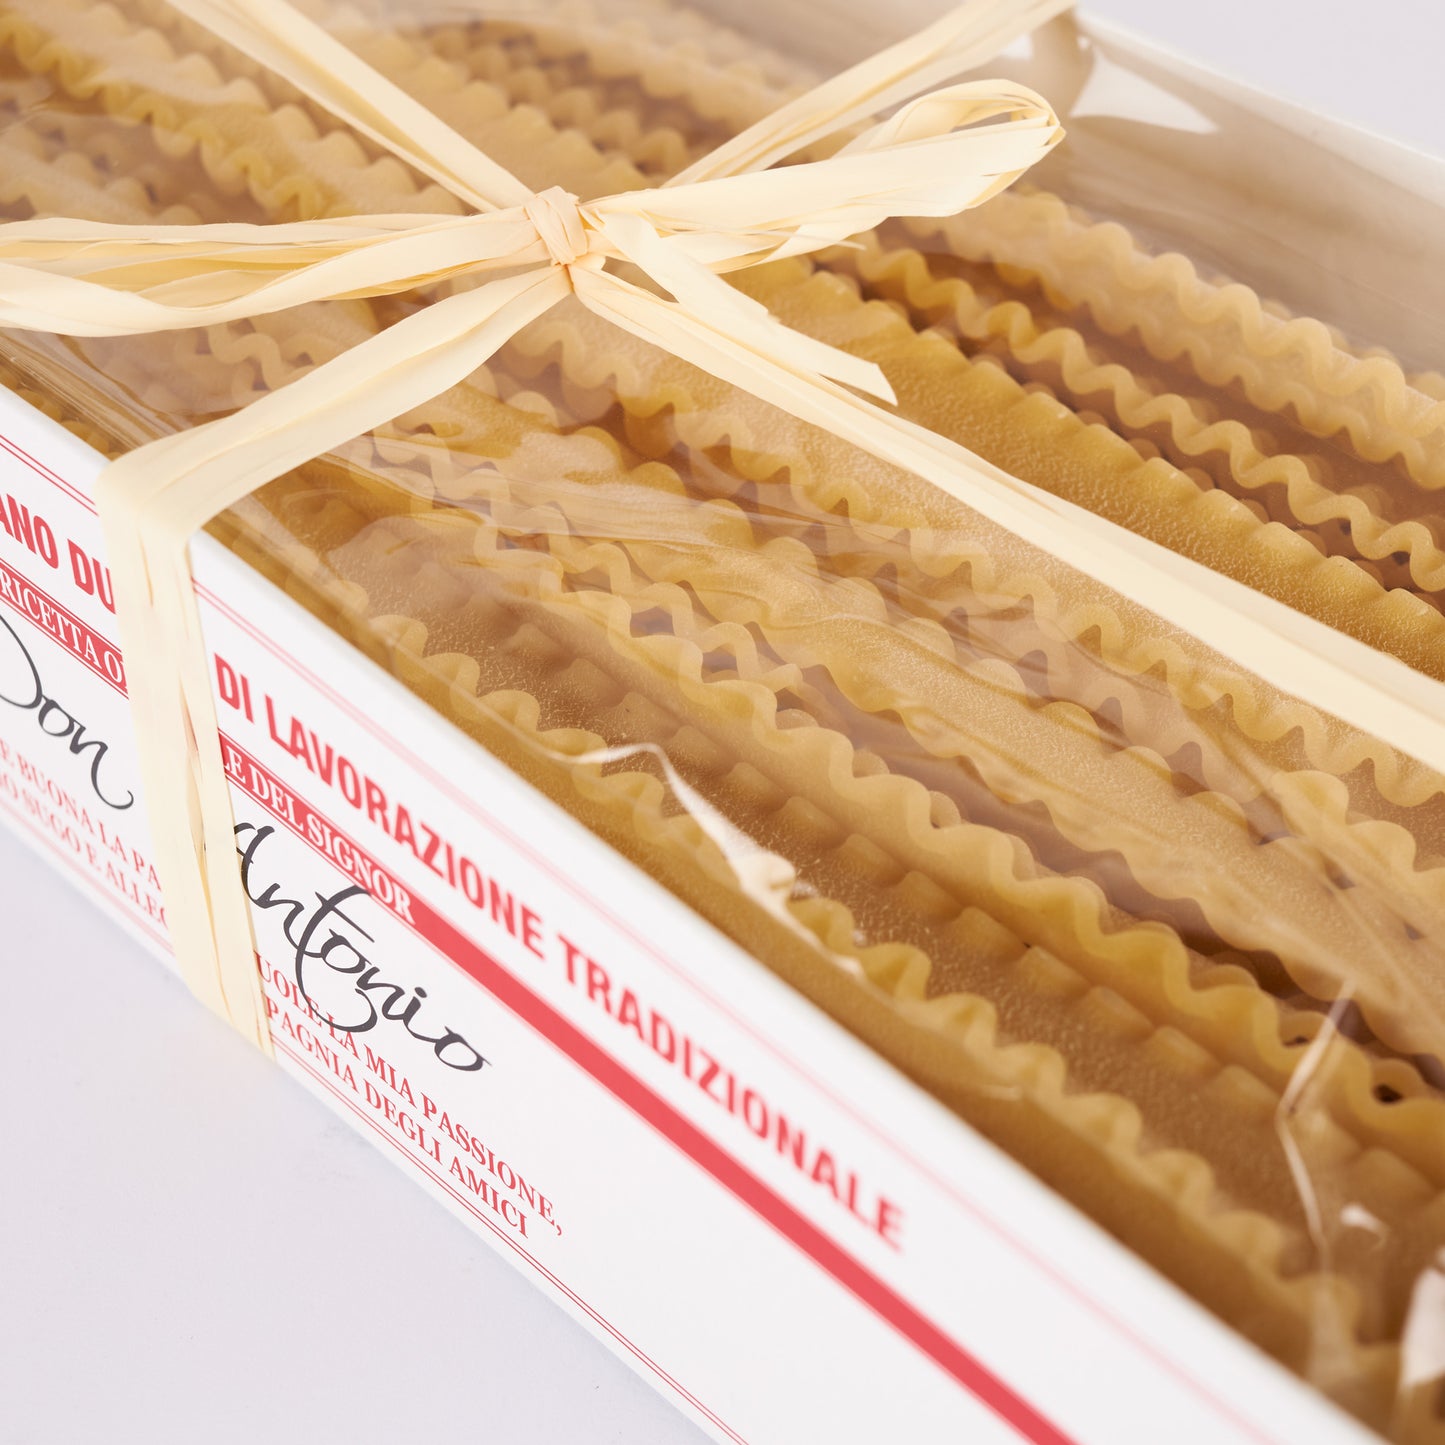 Schöne Nudelverpackung - Pasta Reginella von Don Antonio